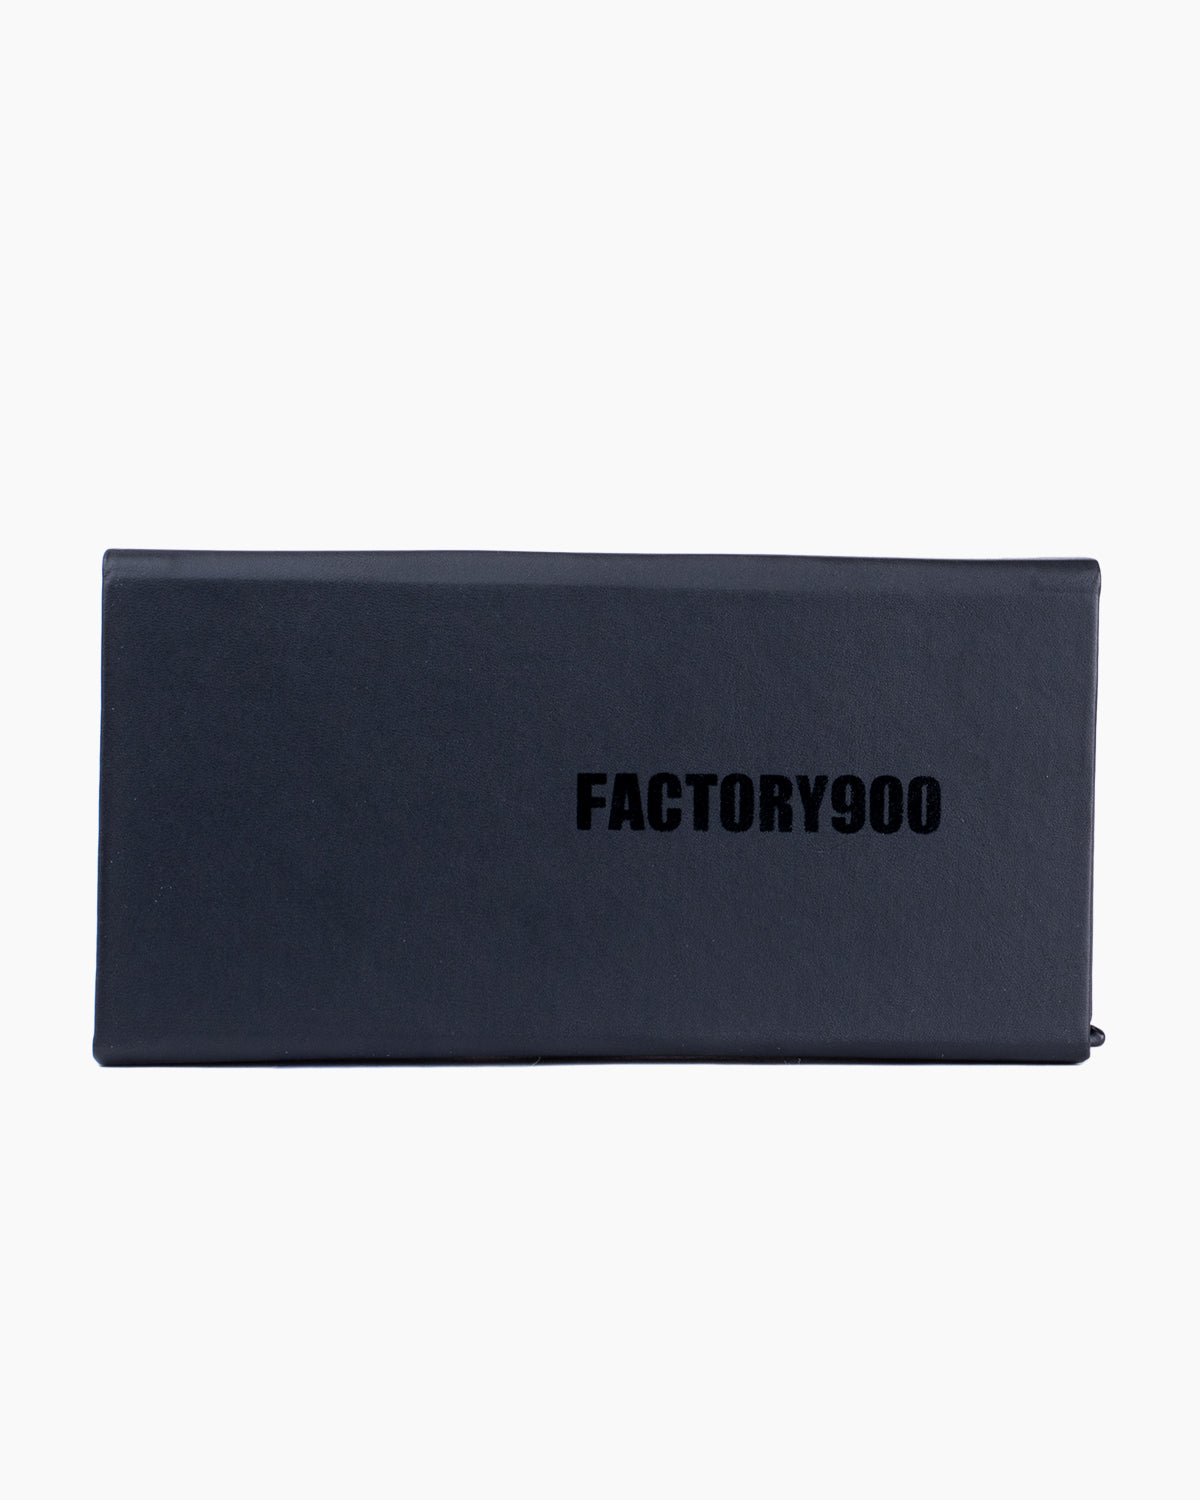 Factory 900 - RF-170 - 001 | Bar à lunettes:  Marie-Sophie Dion